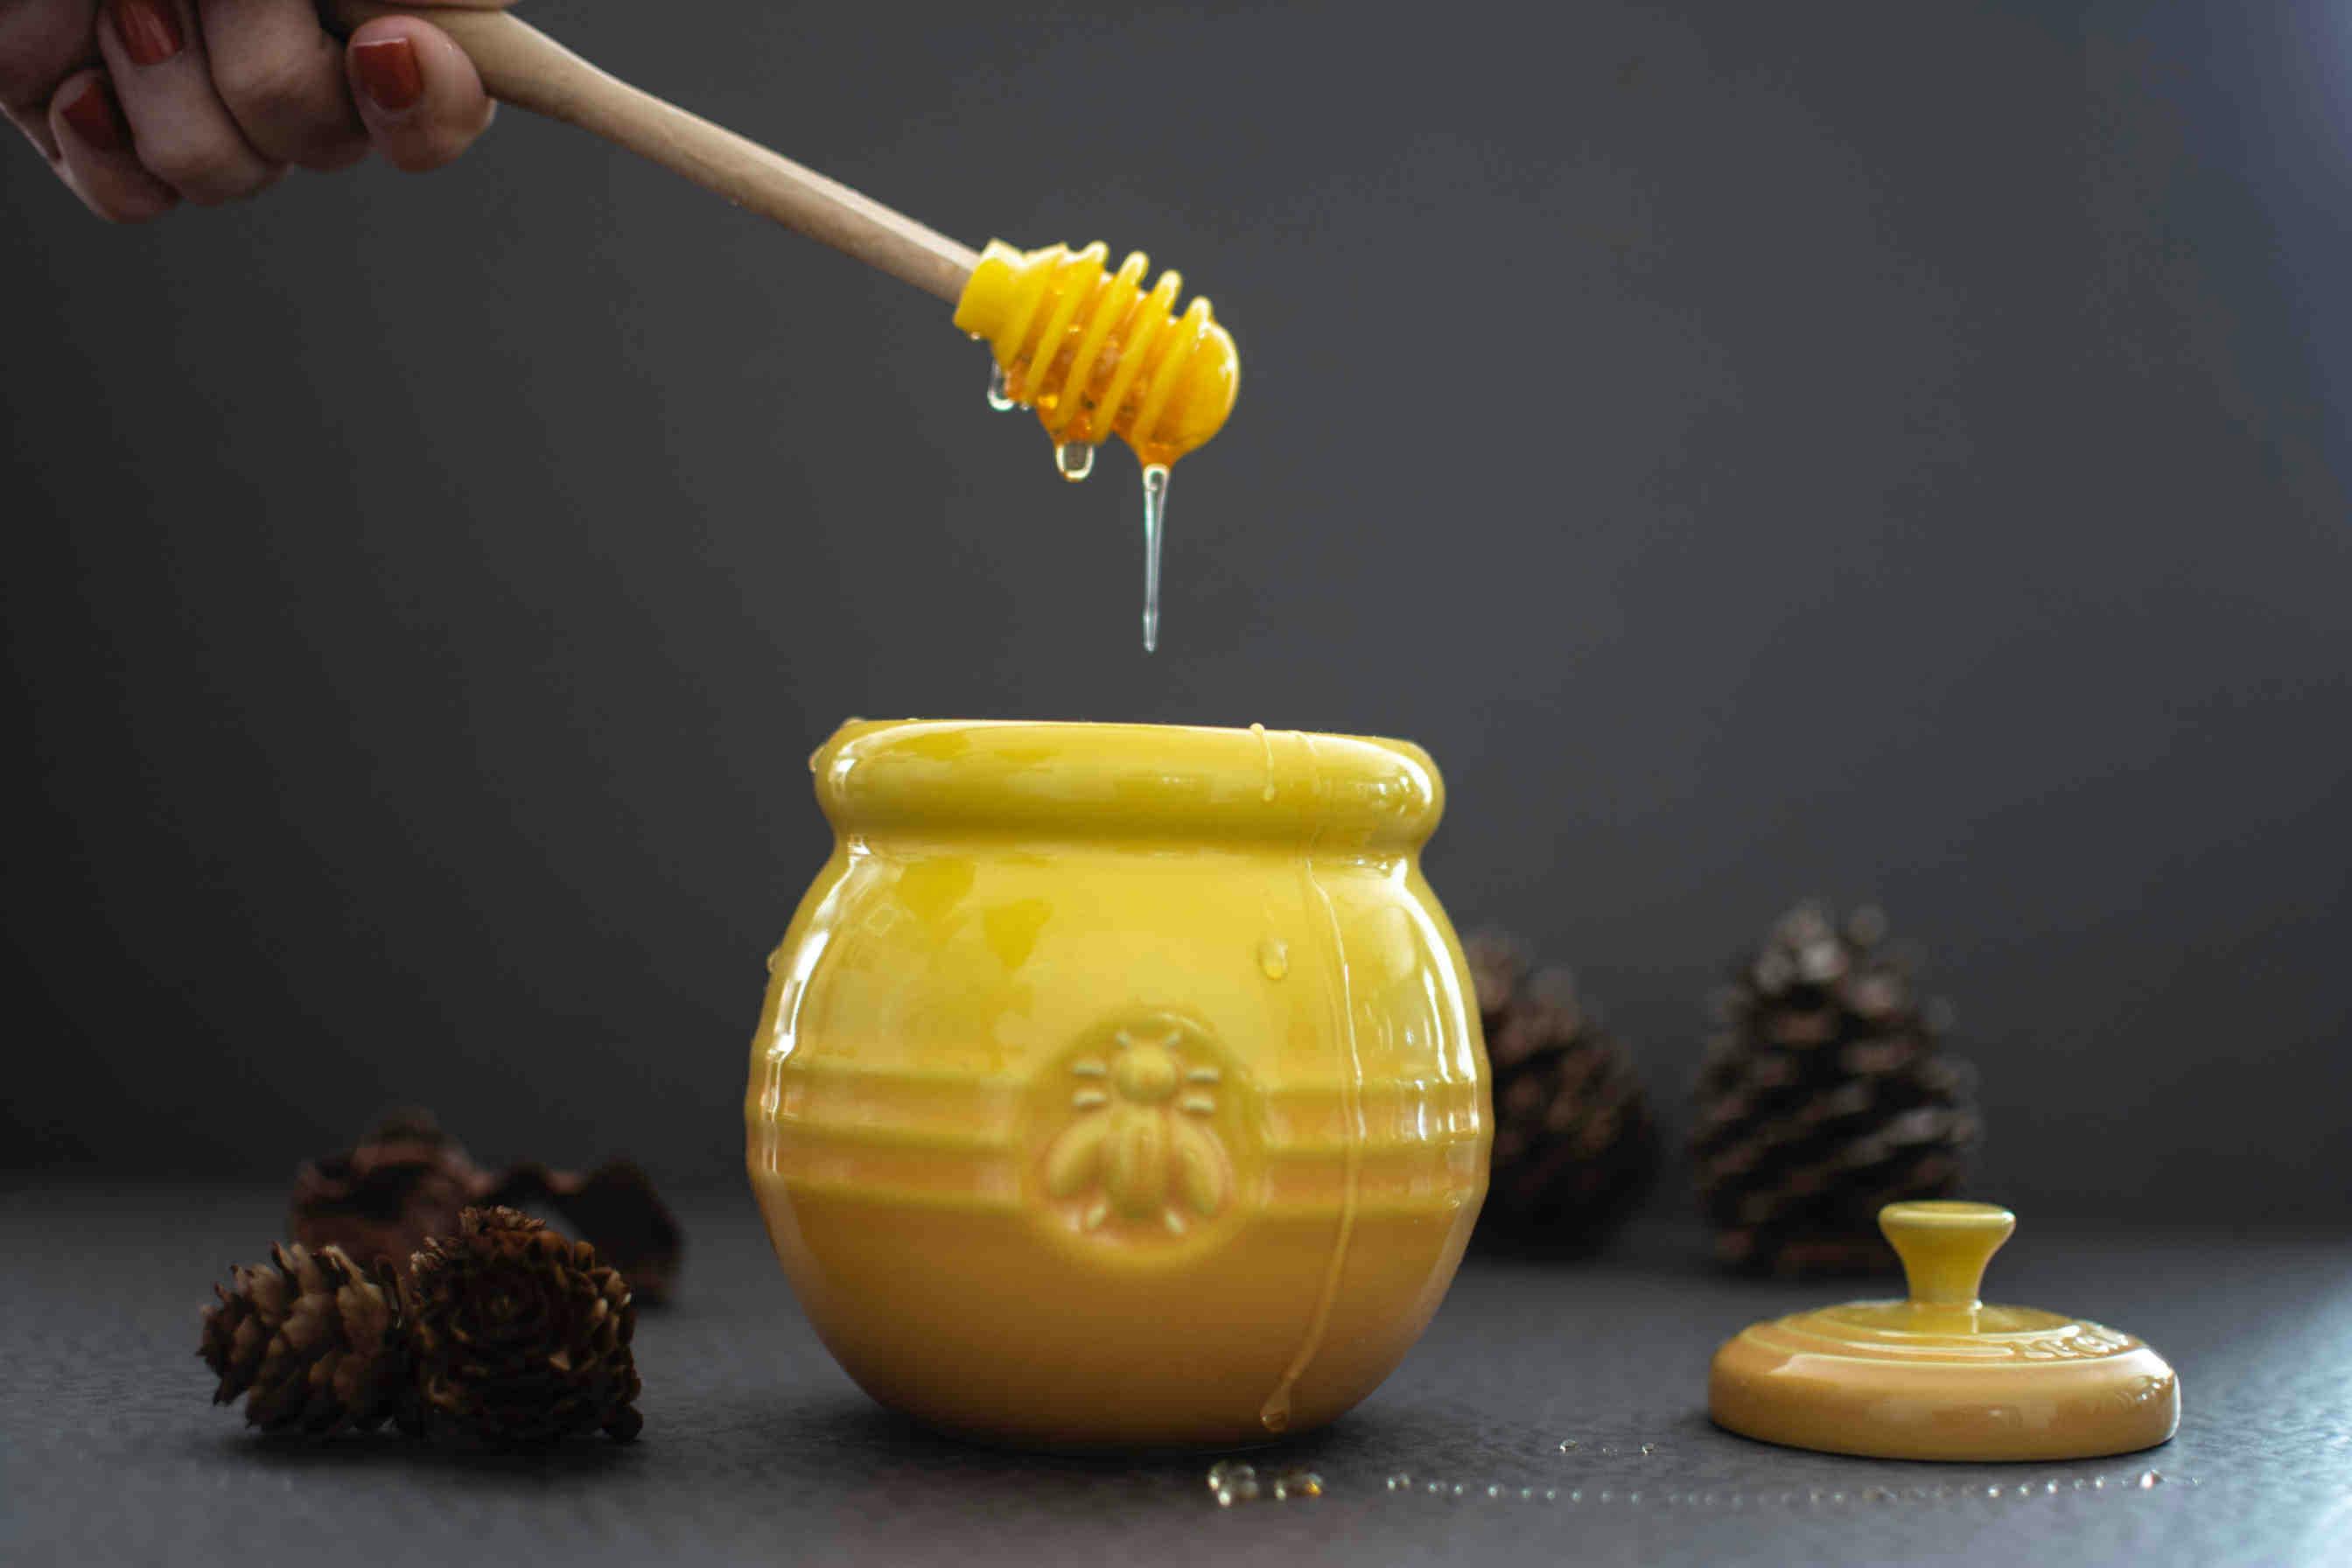 Degustazione del miele: il Colore